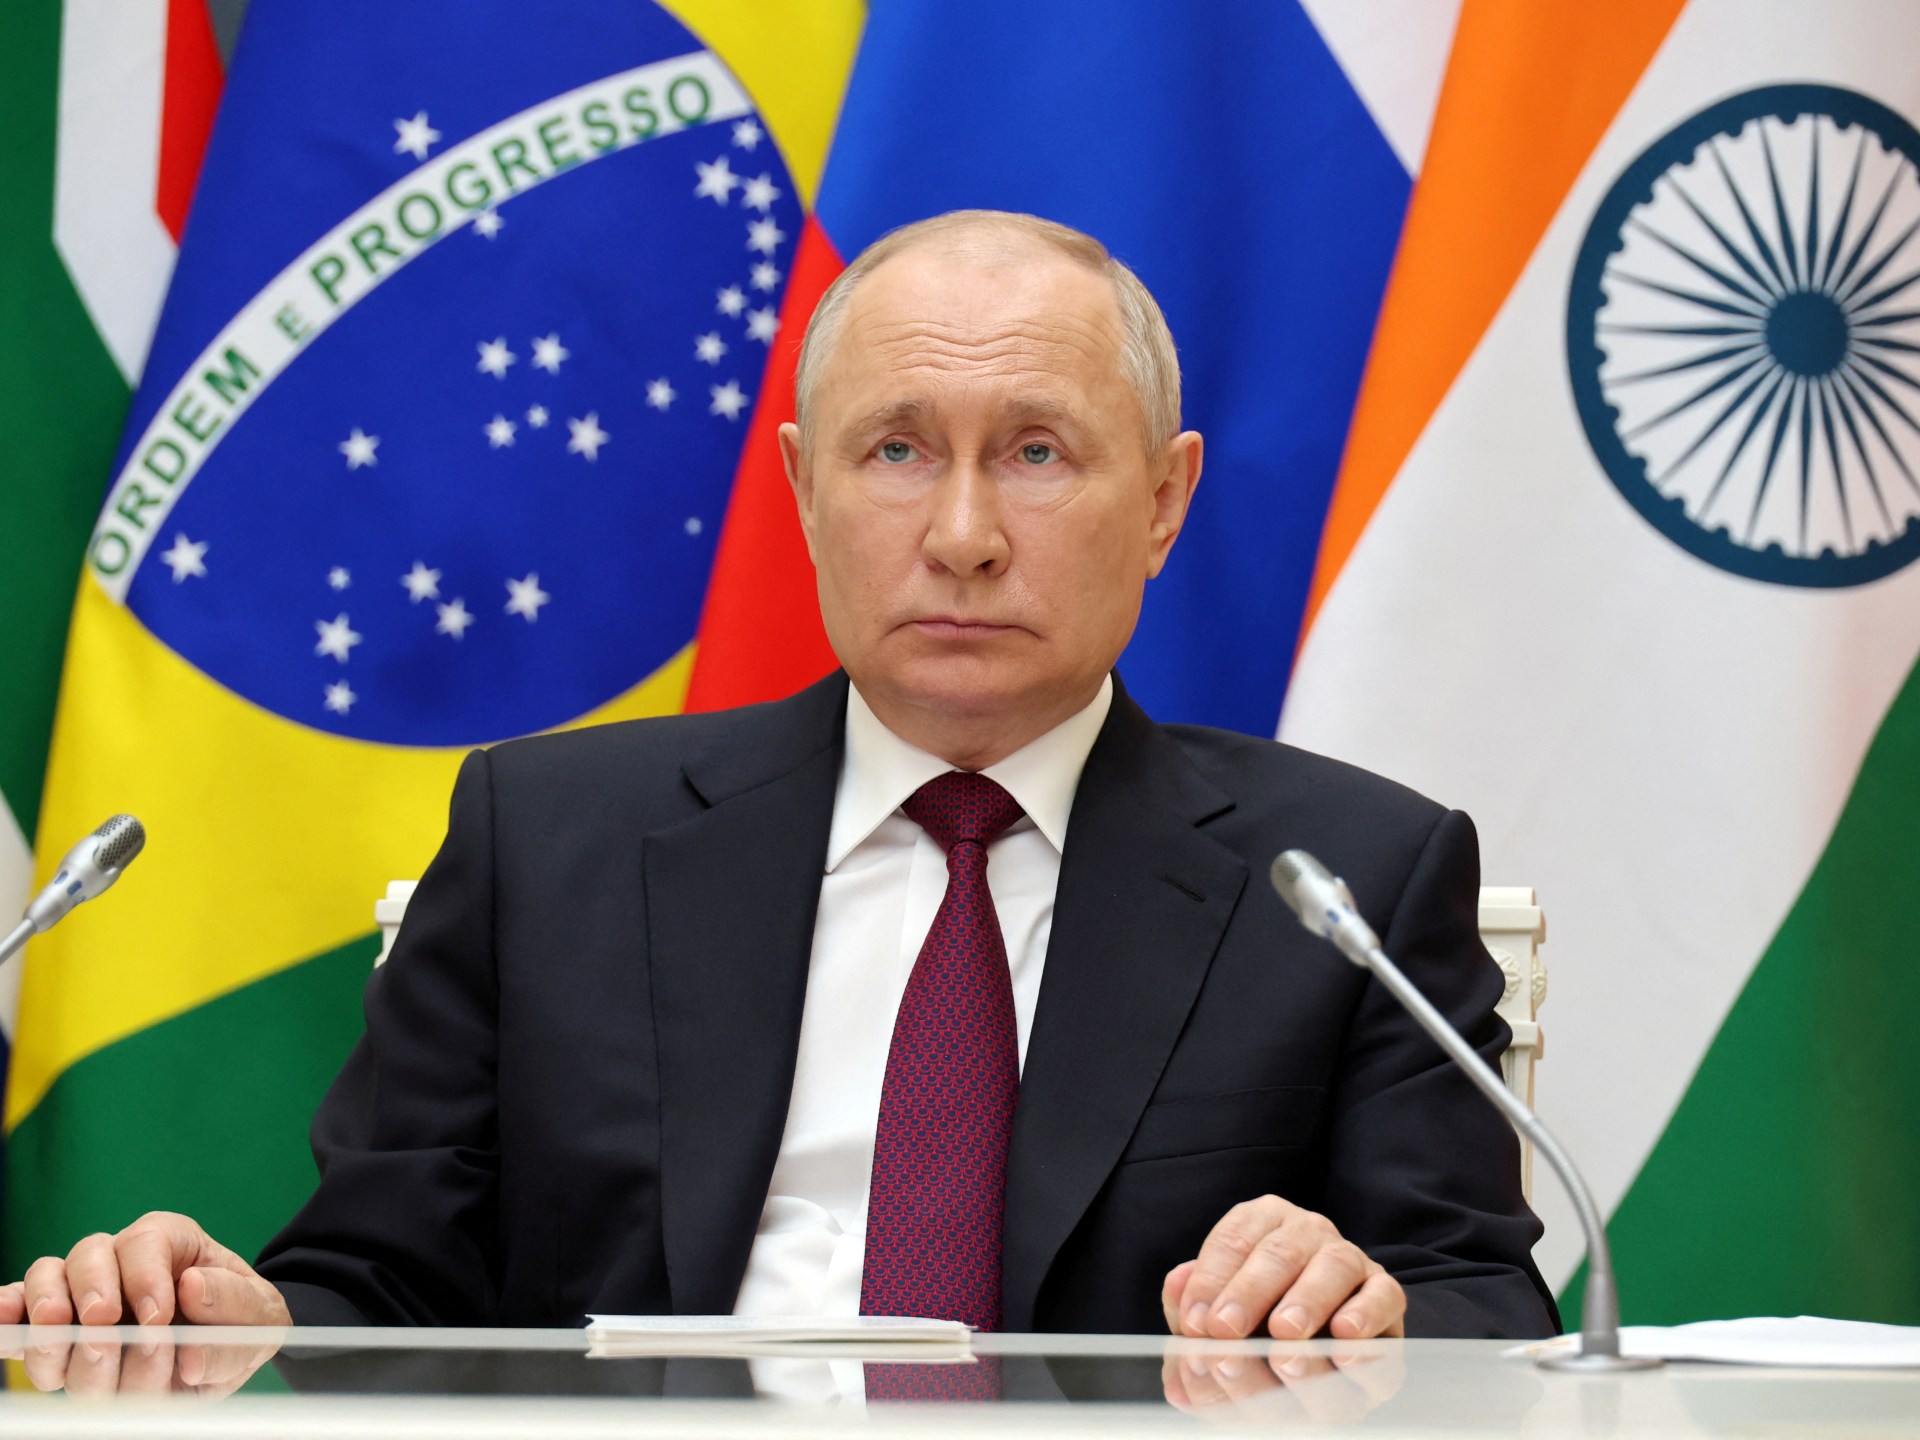 Presiden Brazil menarik kembali penangkapan Putin demi keamanan pada KTT G20 di Rio |  Berita Vladimir Putin